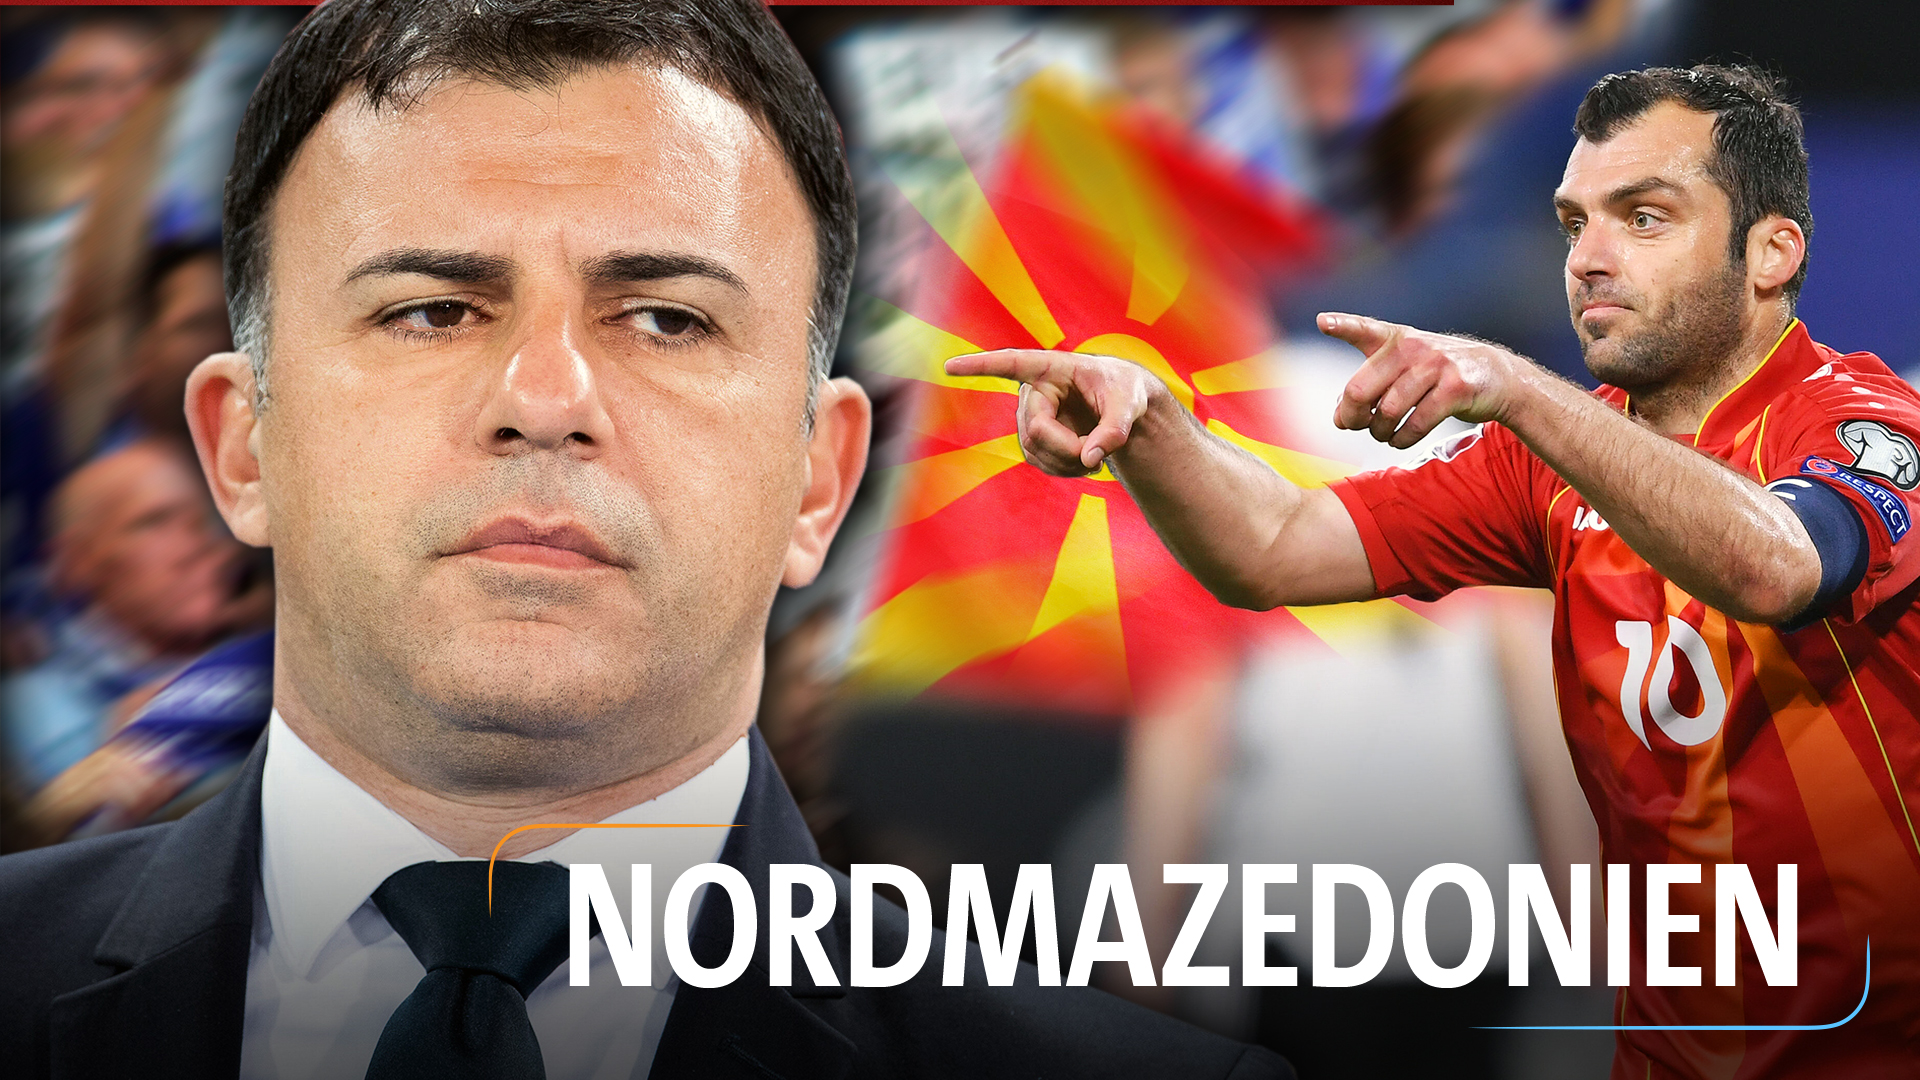 Teaserbild für die Nationalmannschaft: Nordmazedonien